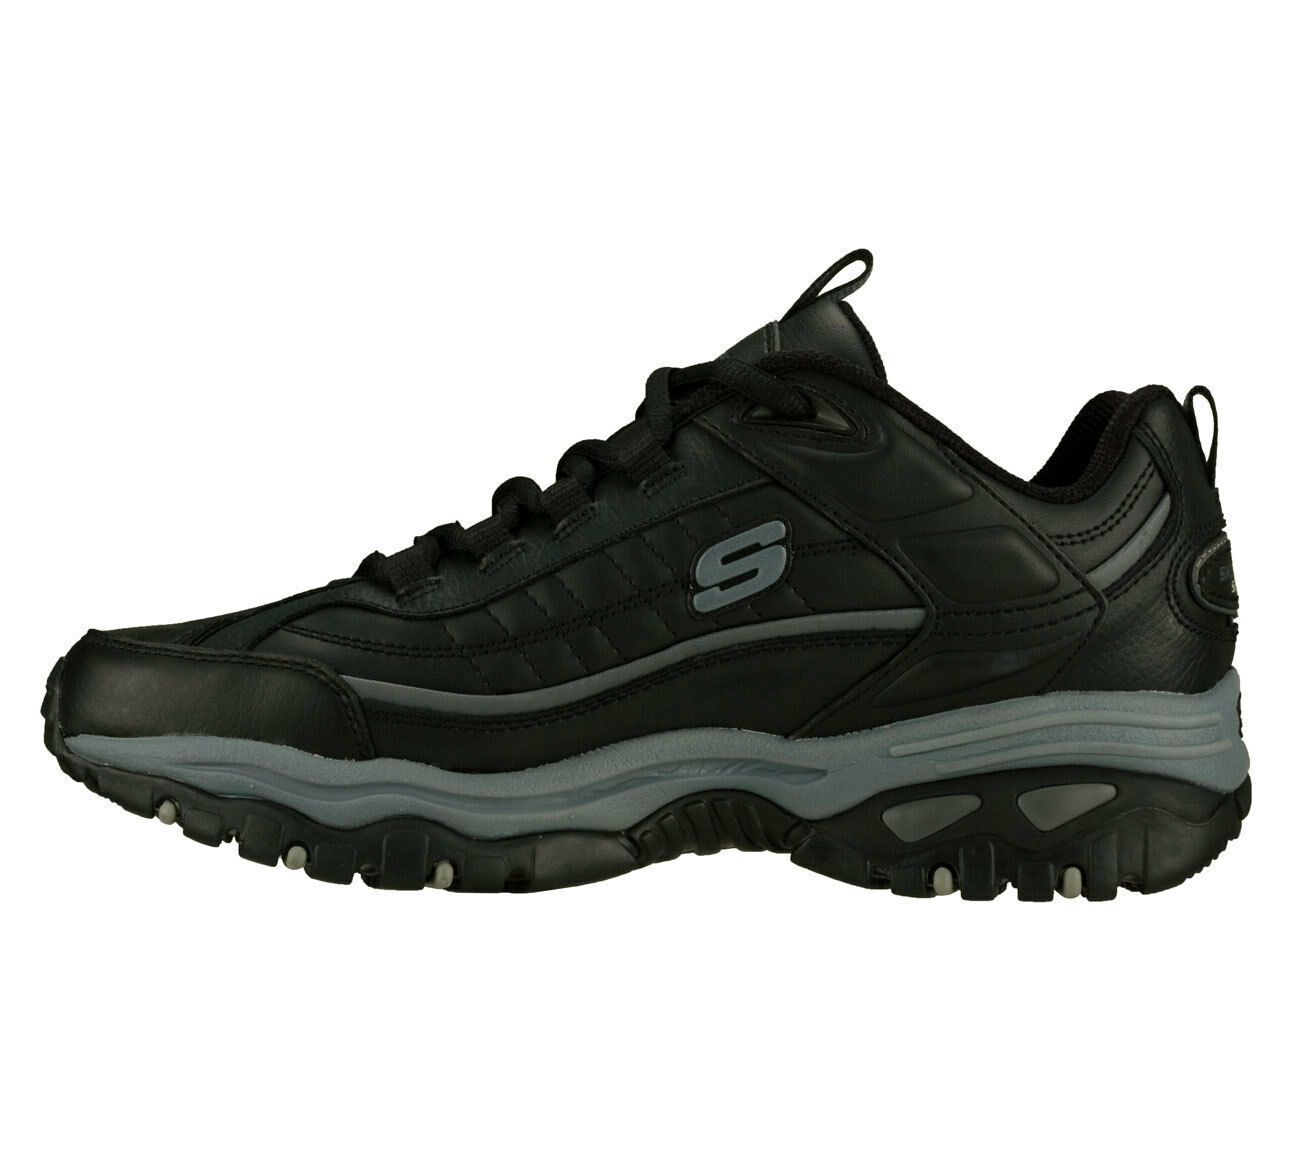 Skechers Black EW Wide Width shoes Men New Sport Train Leather Sneaker ...